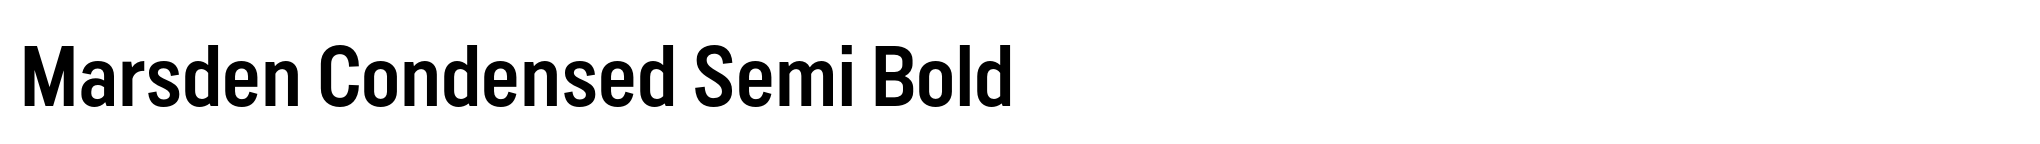 Marsden Condensed Semi Bold image